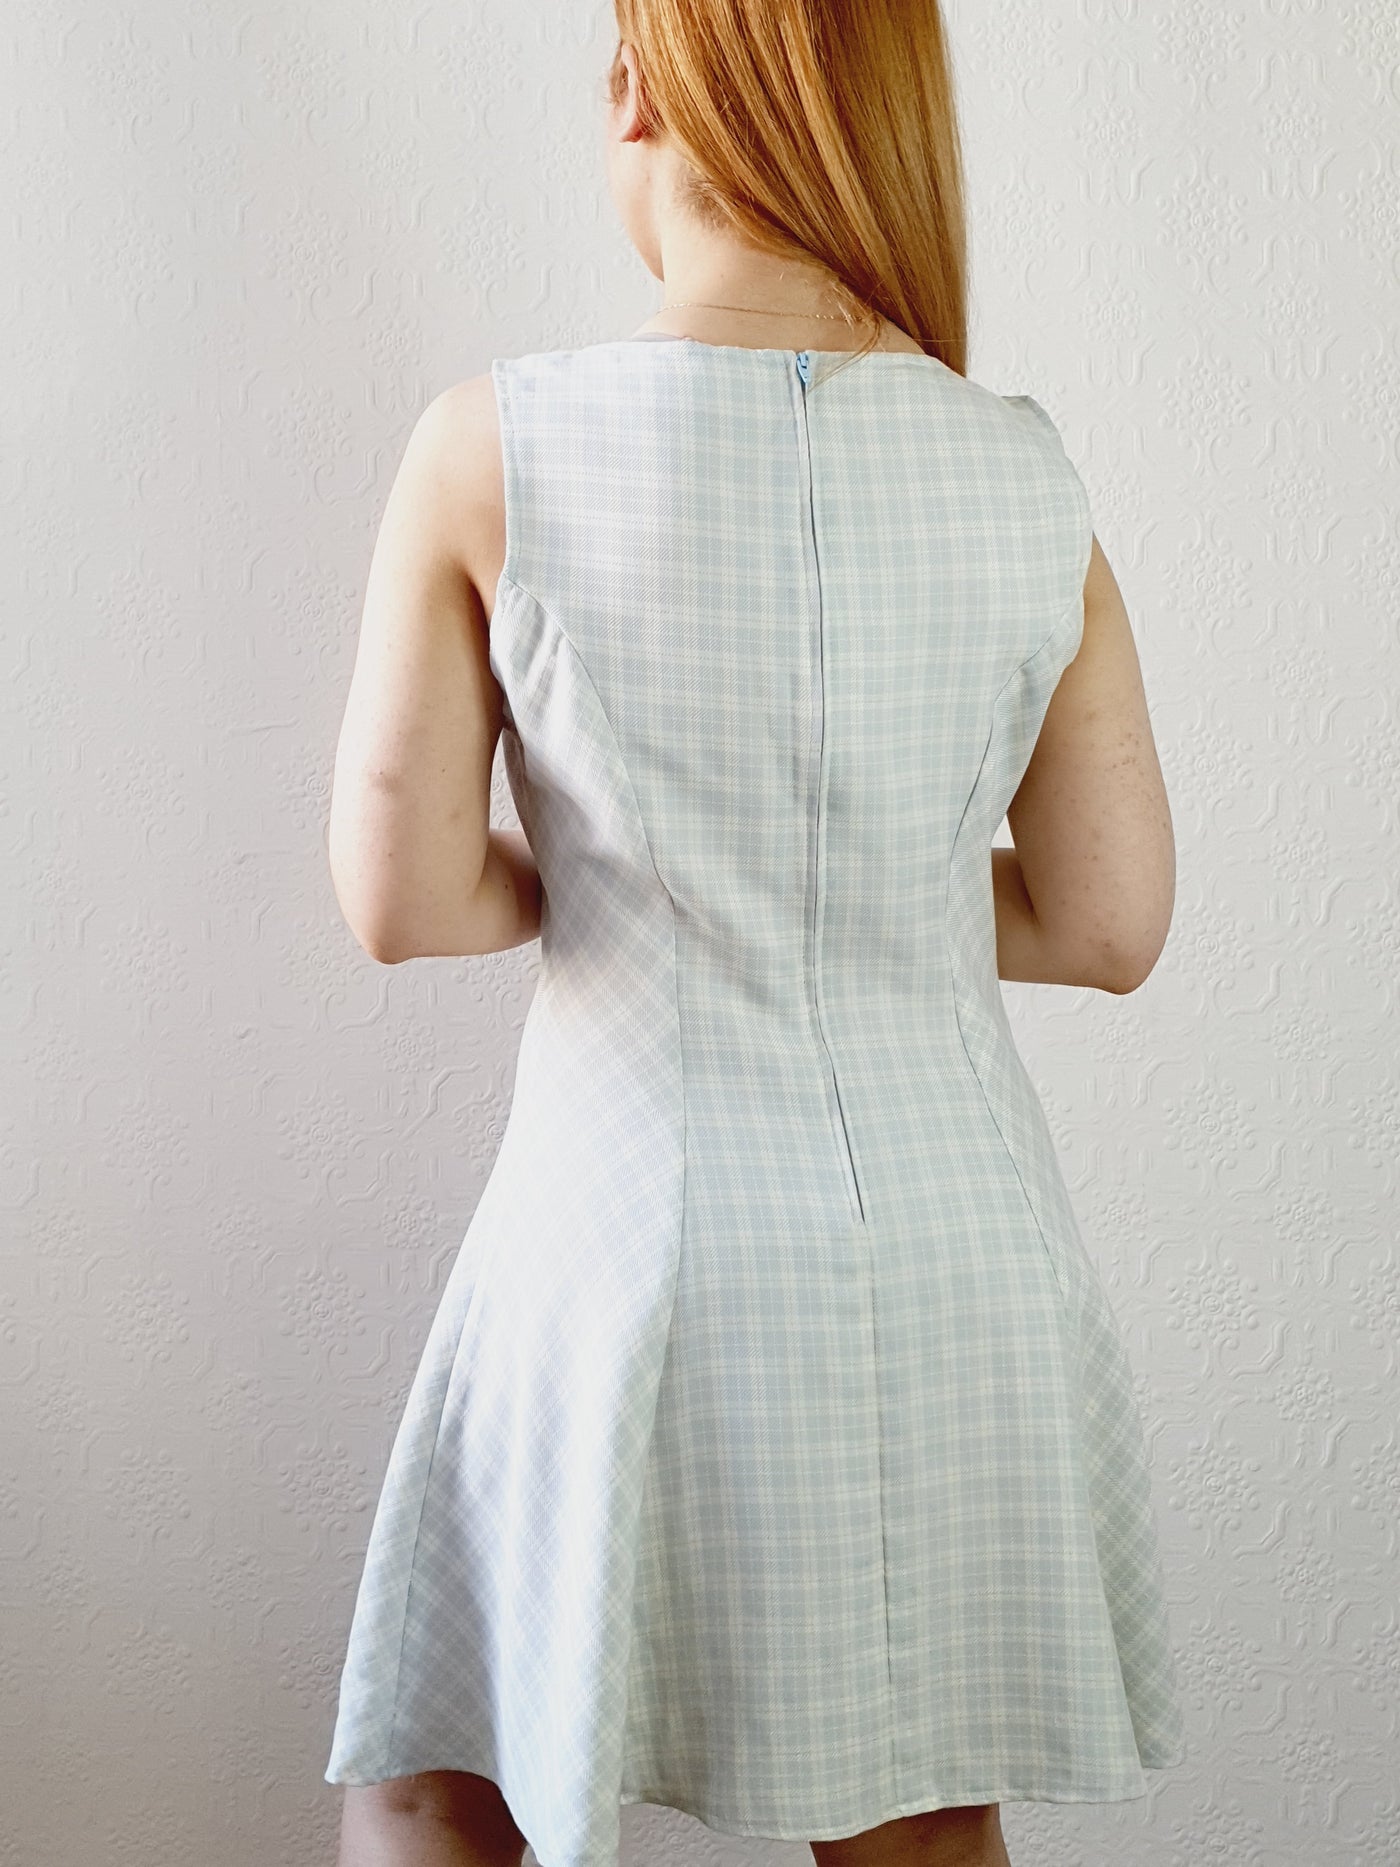 Vintage A-line Gingham Dress • S-M